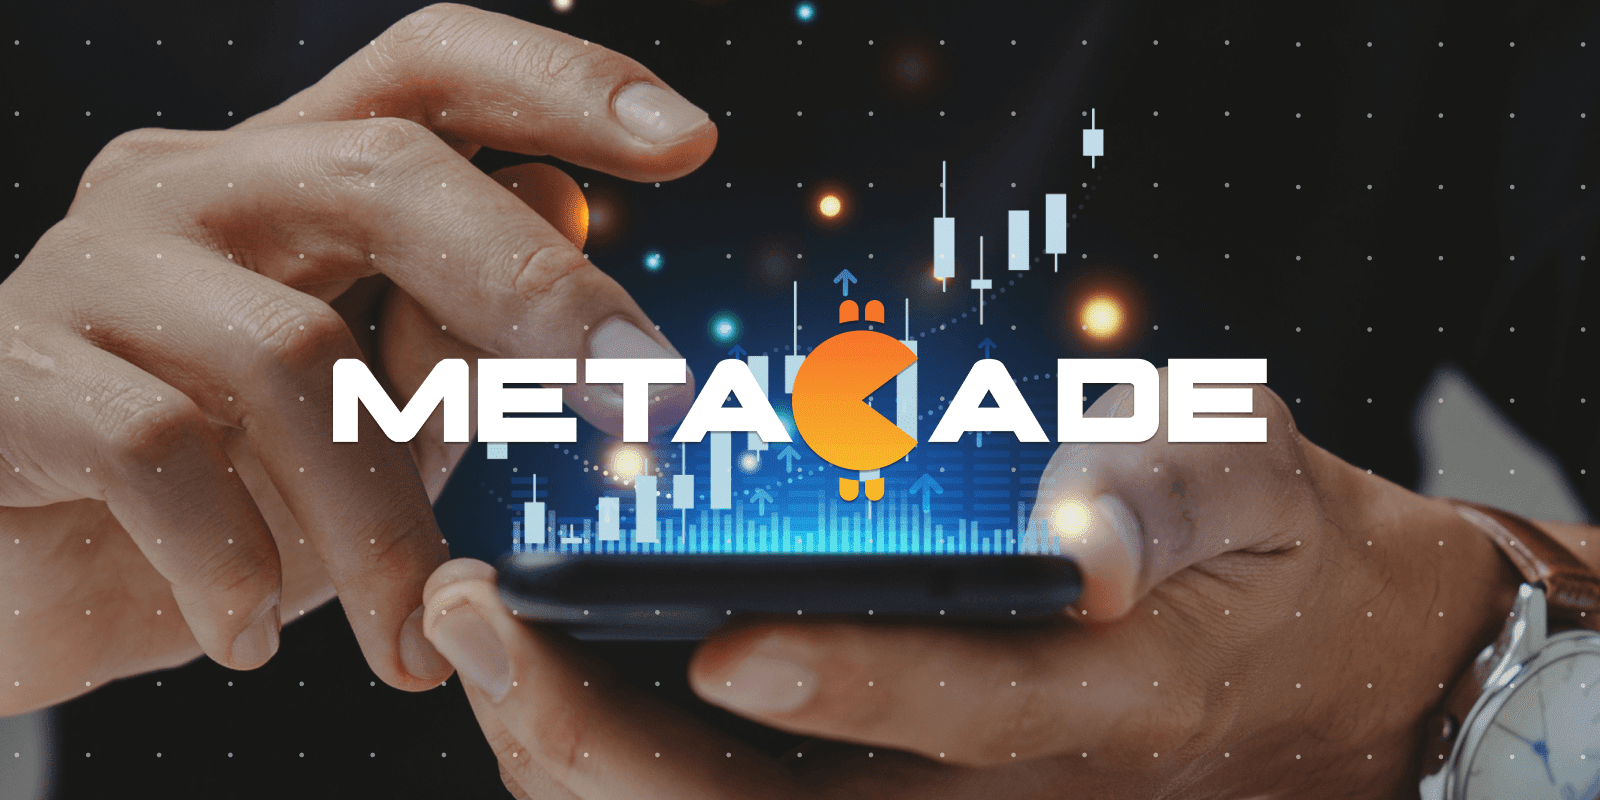 Metacade, paras krypto-ennakkomyynti, johon voit sijoittaa juuri nyt.